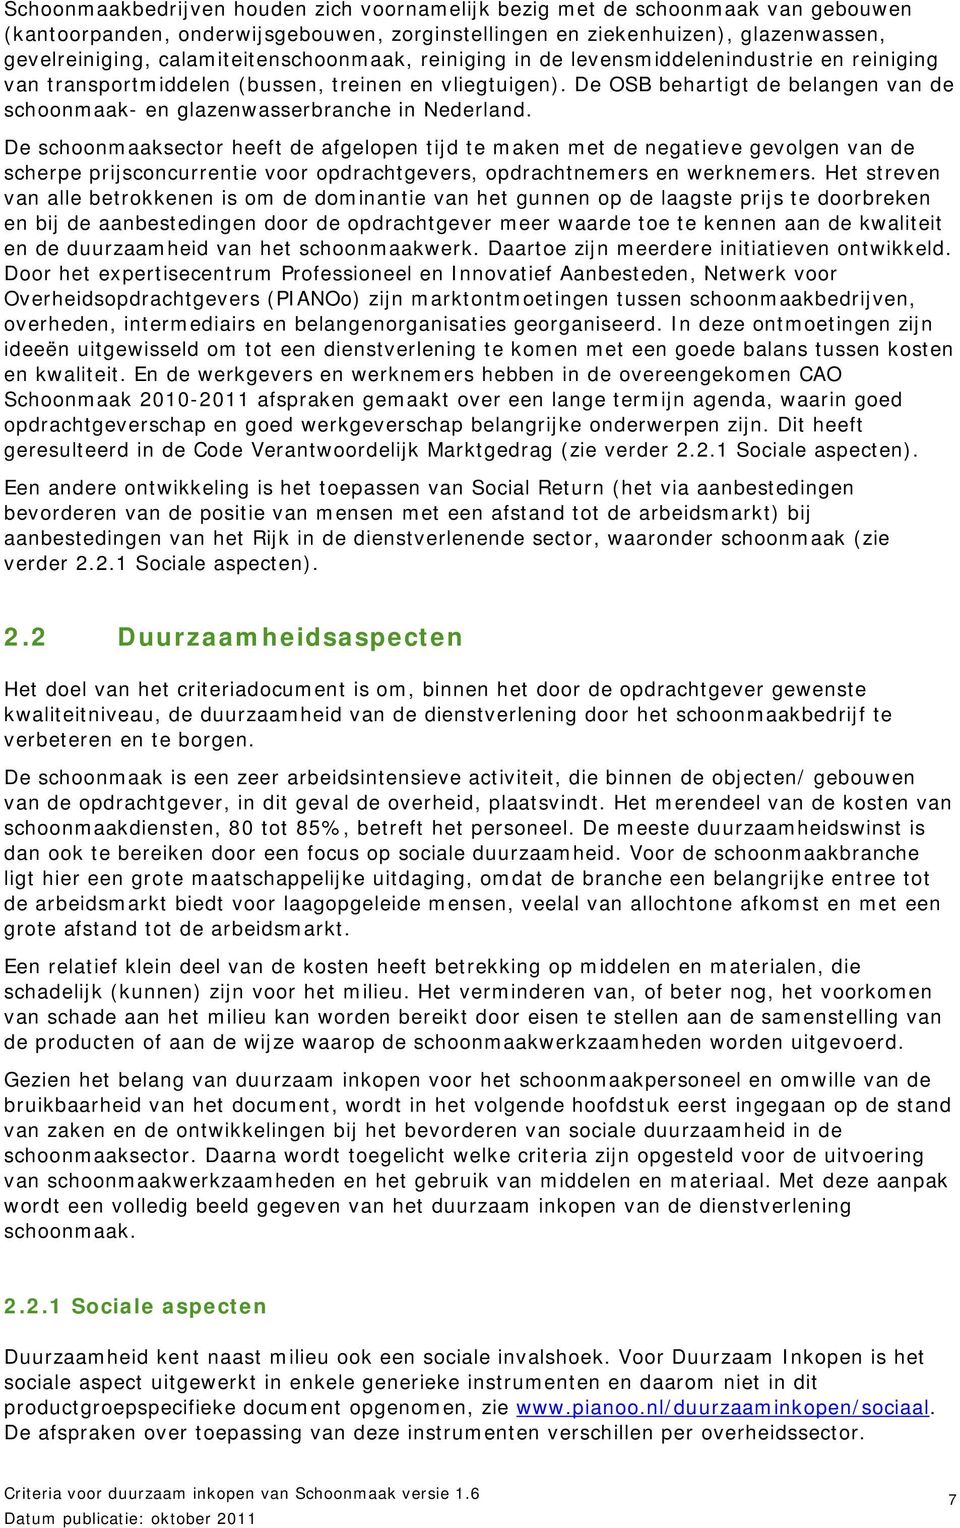 De OSB behartigt de belangen van de schoonmaak- en glazenwasserbranche in Nederland.